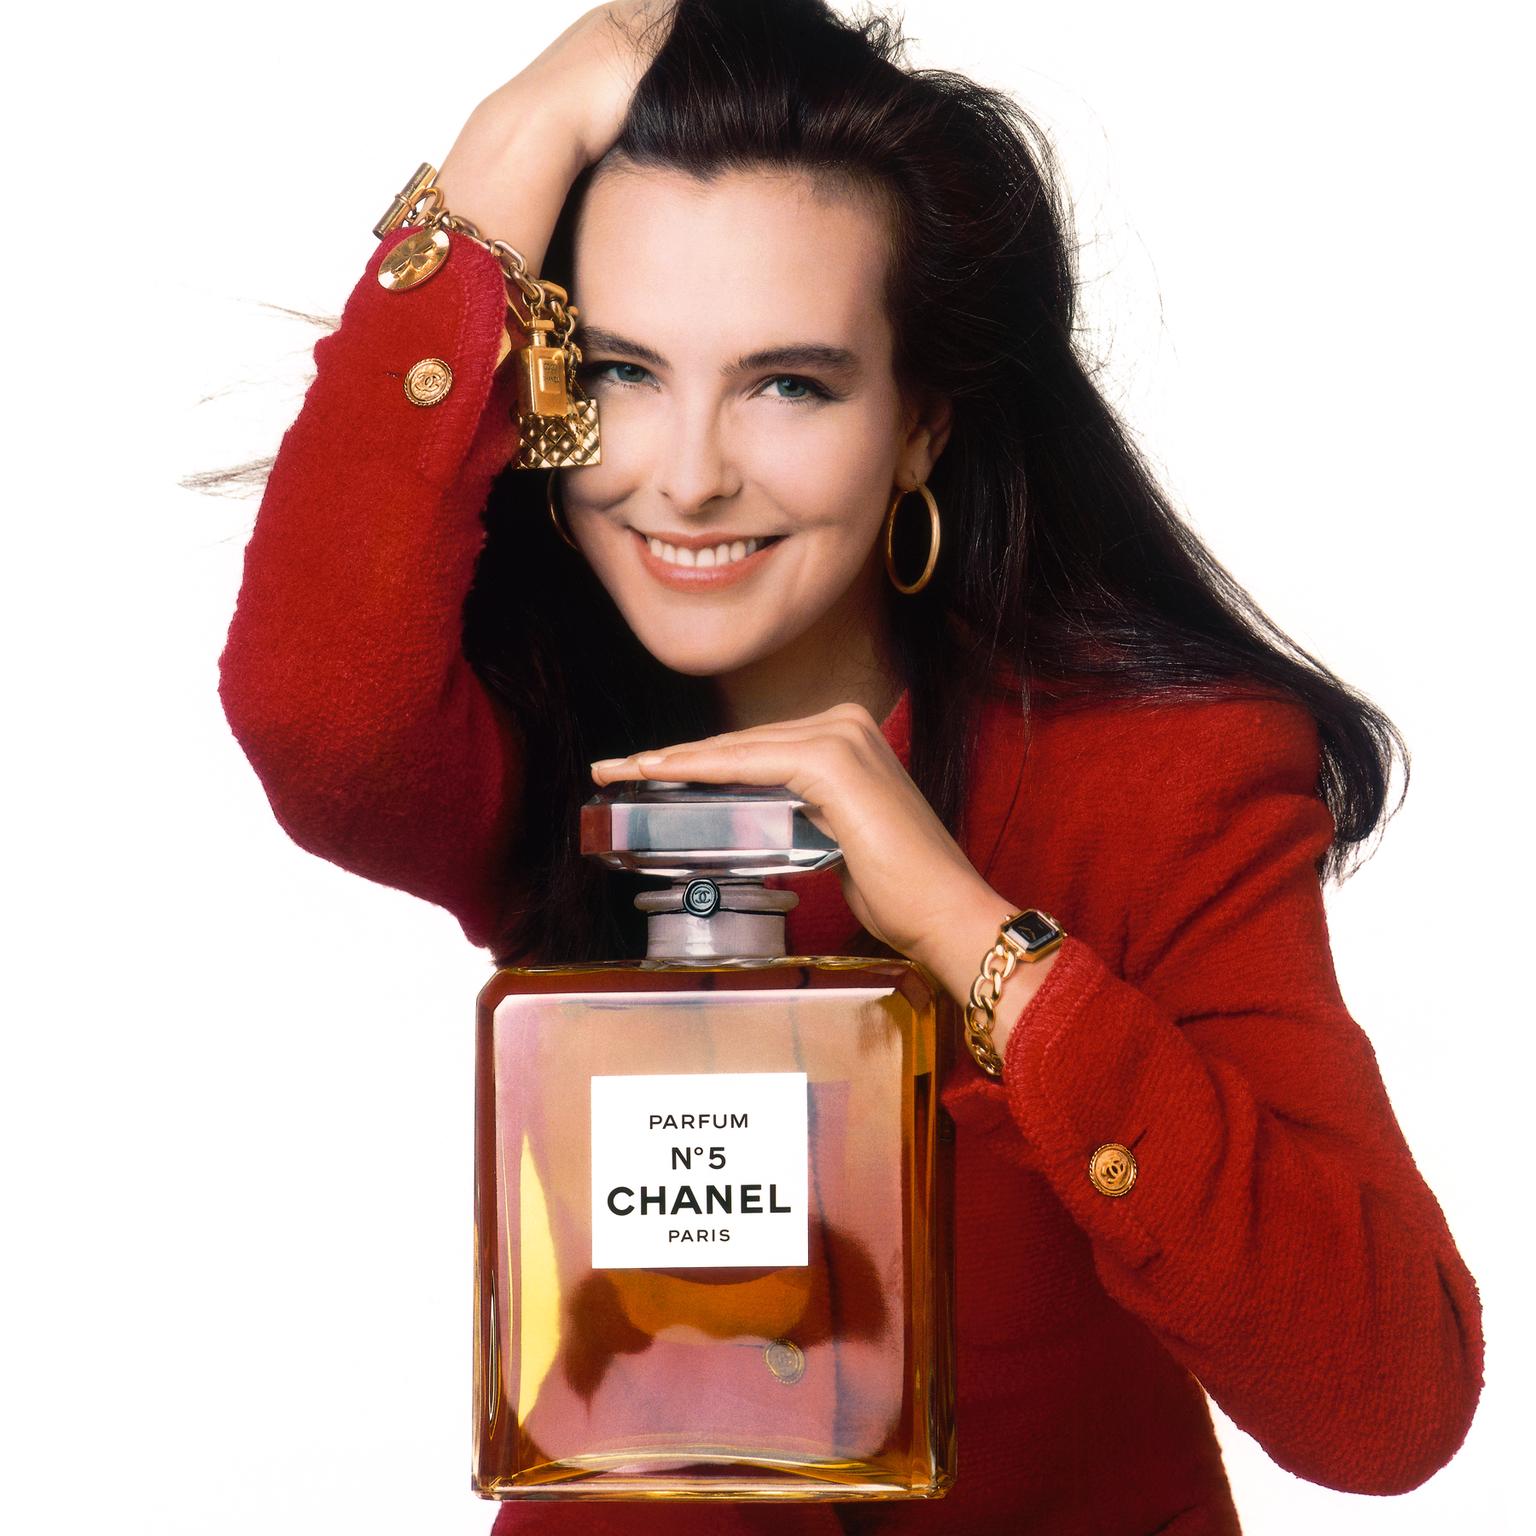 Carole Bouquet in Chanel's Première watch